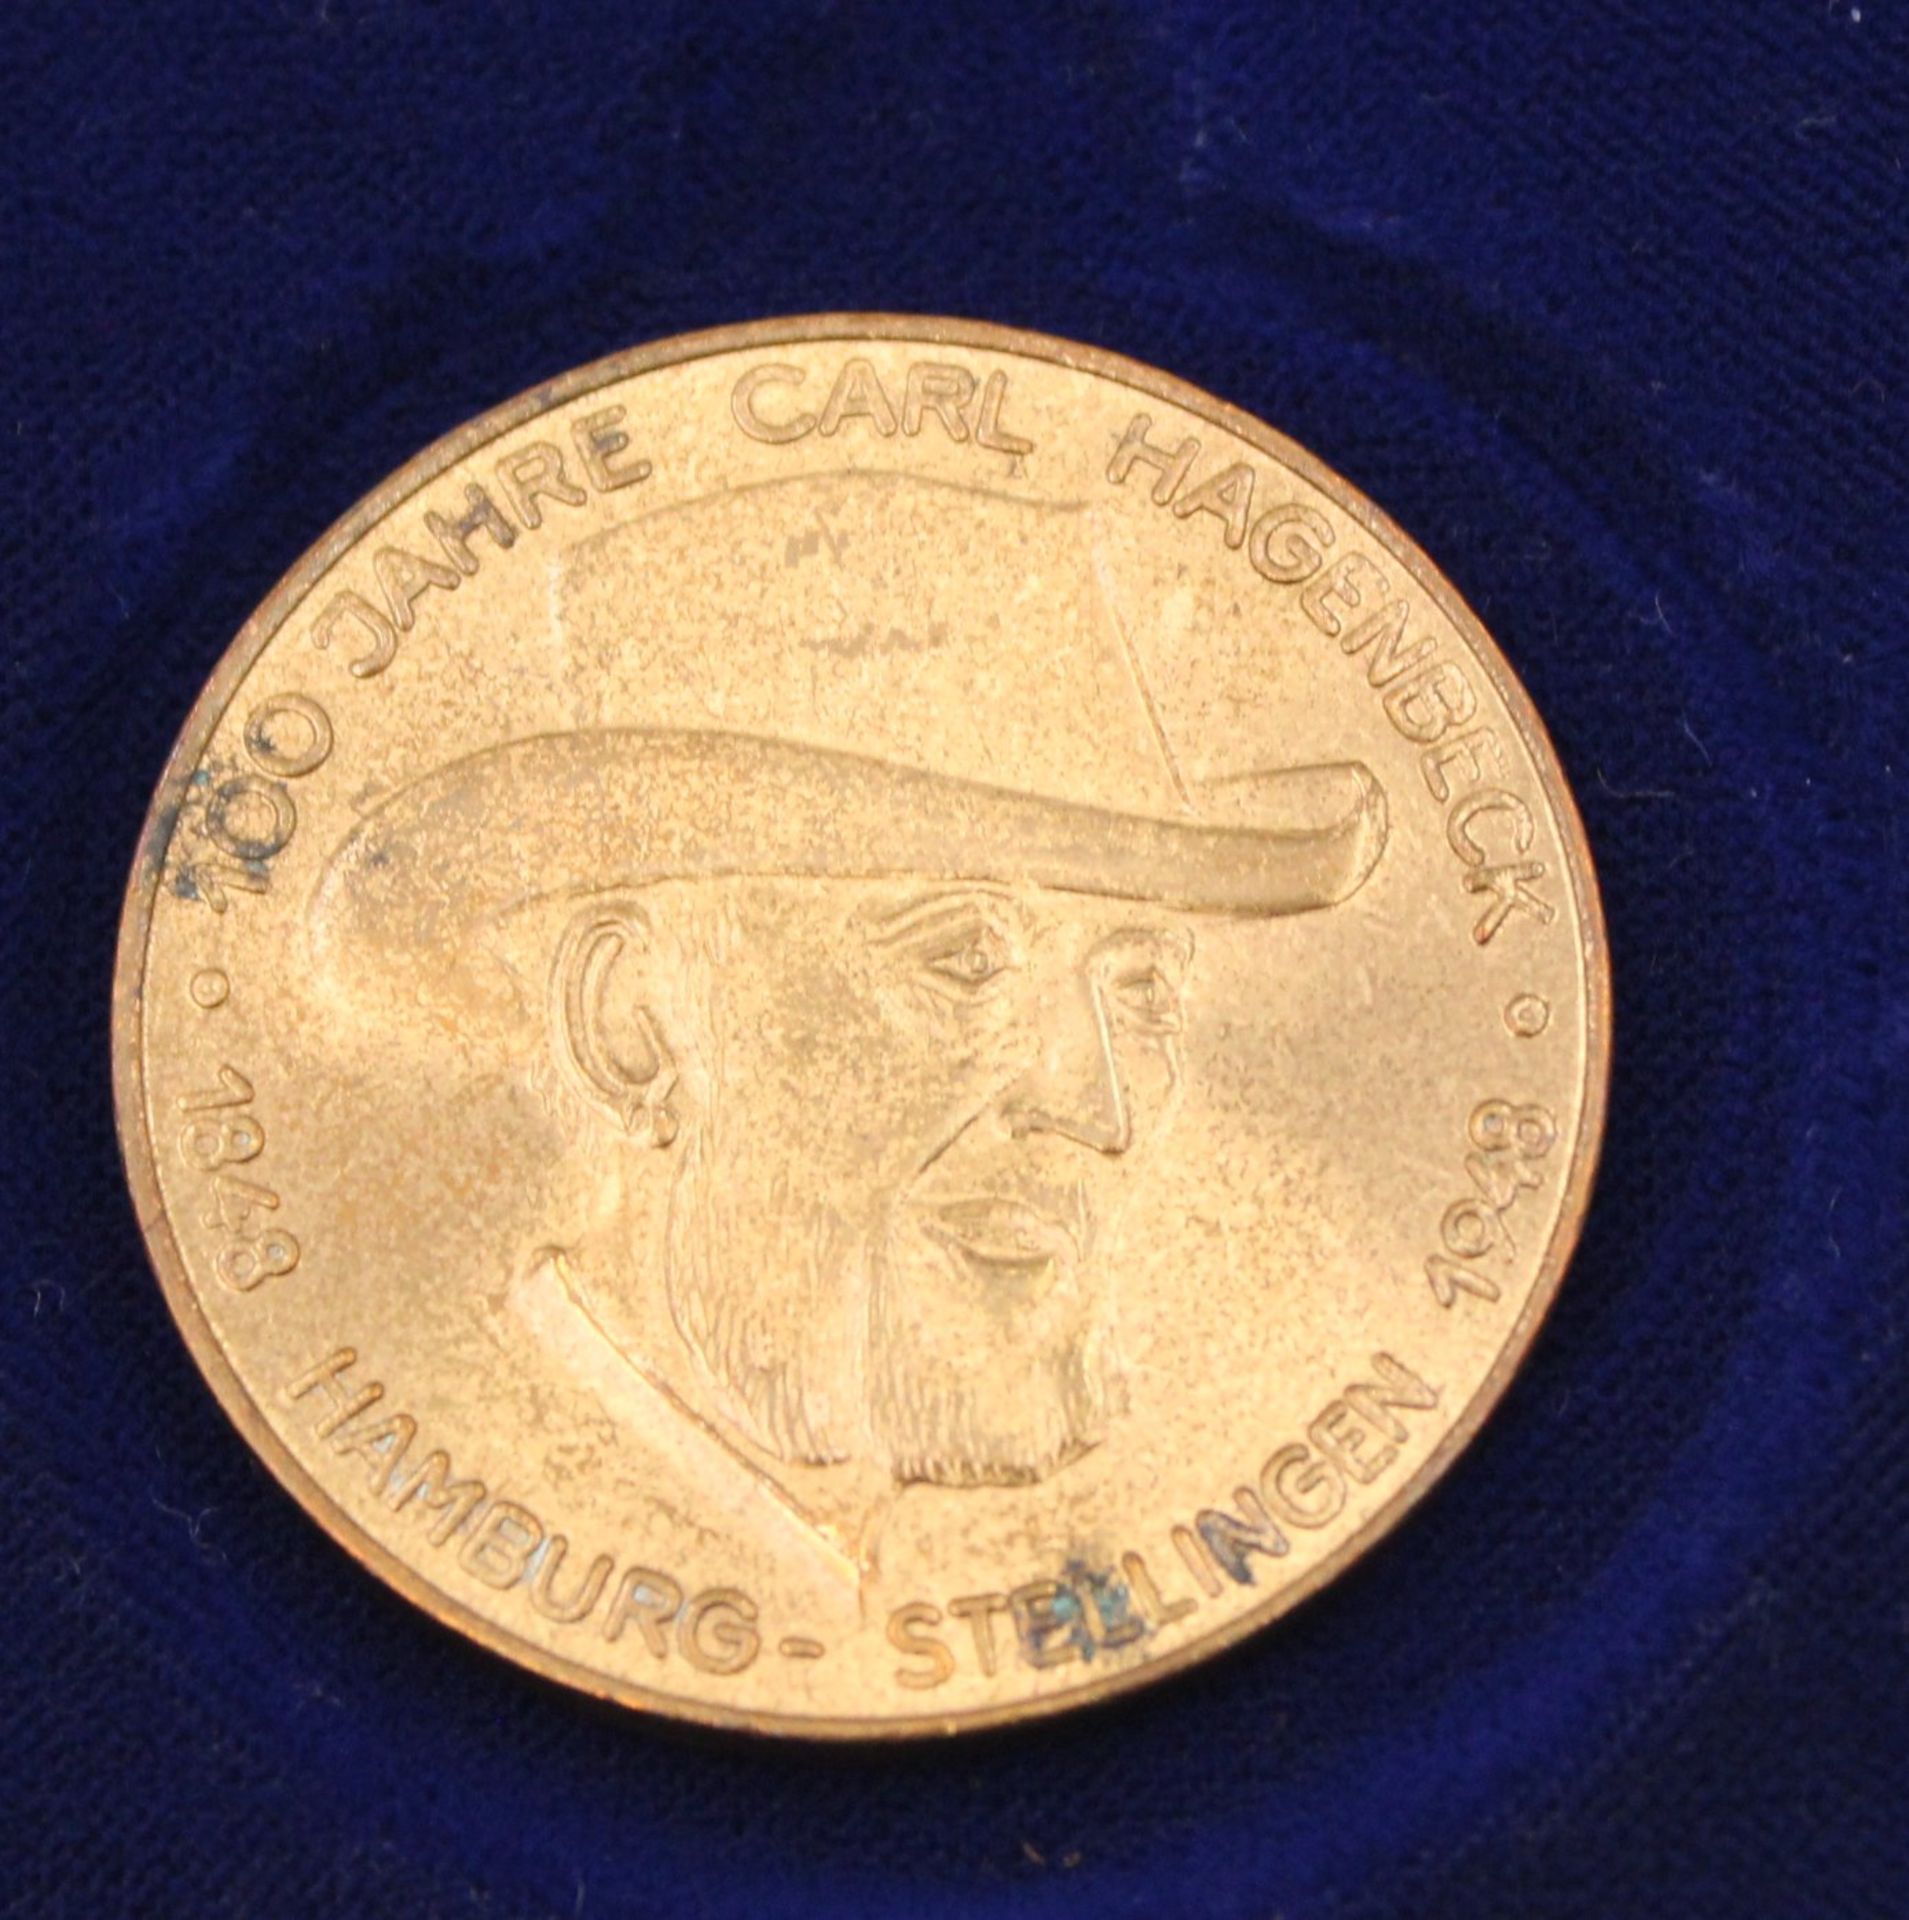 Medaille, 100 Jahre Carl Hagenbeck 1848-1948, Bronze, D-4cm. - Bild 3 aus 3